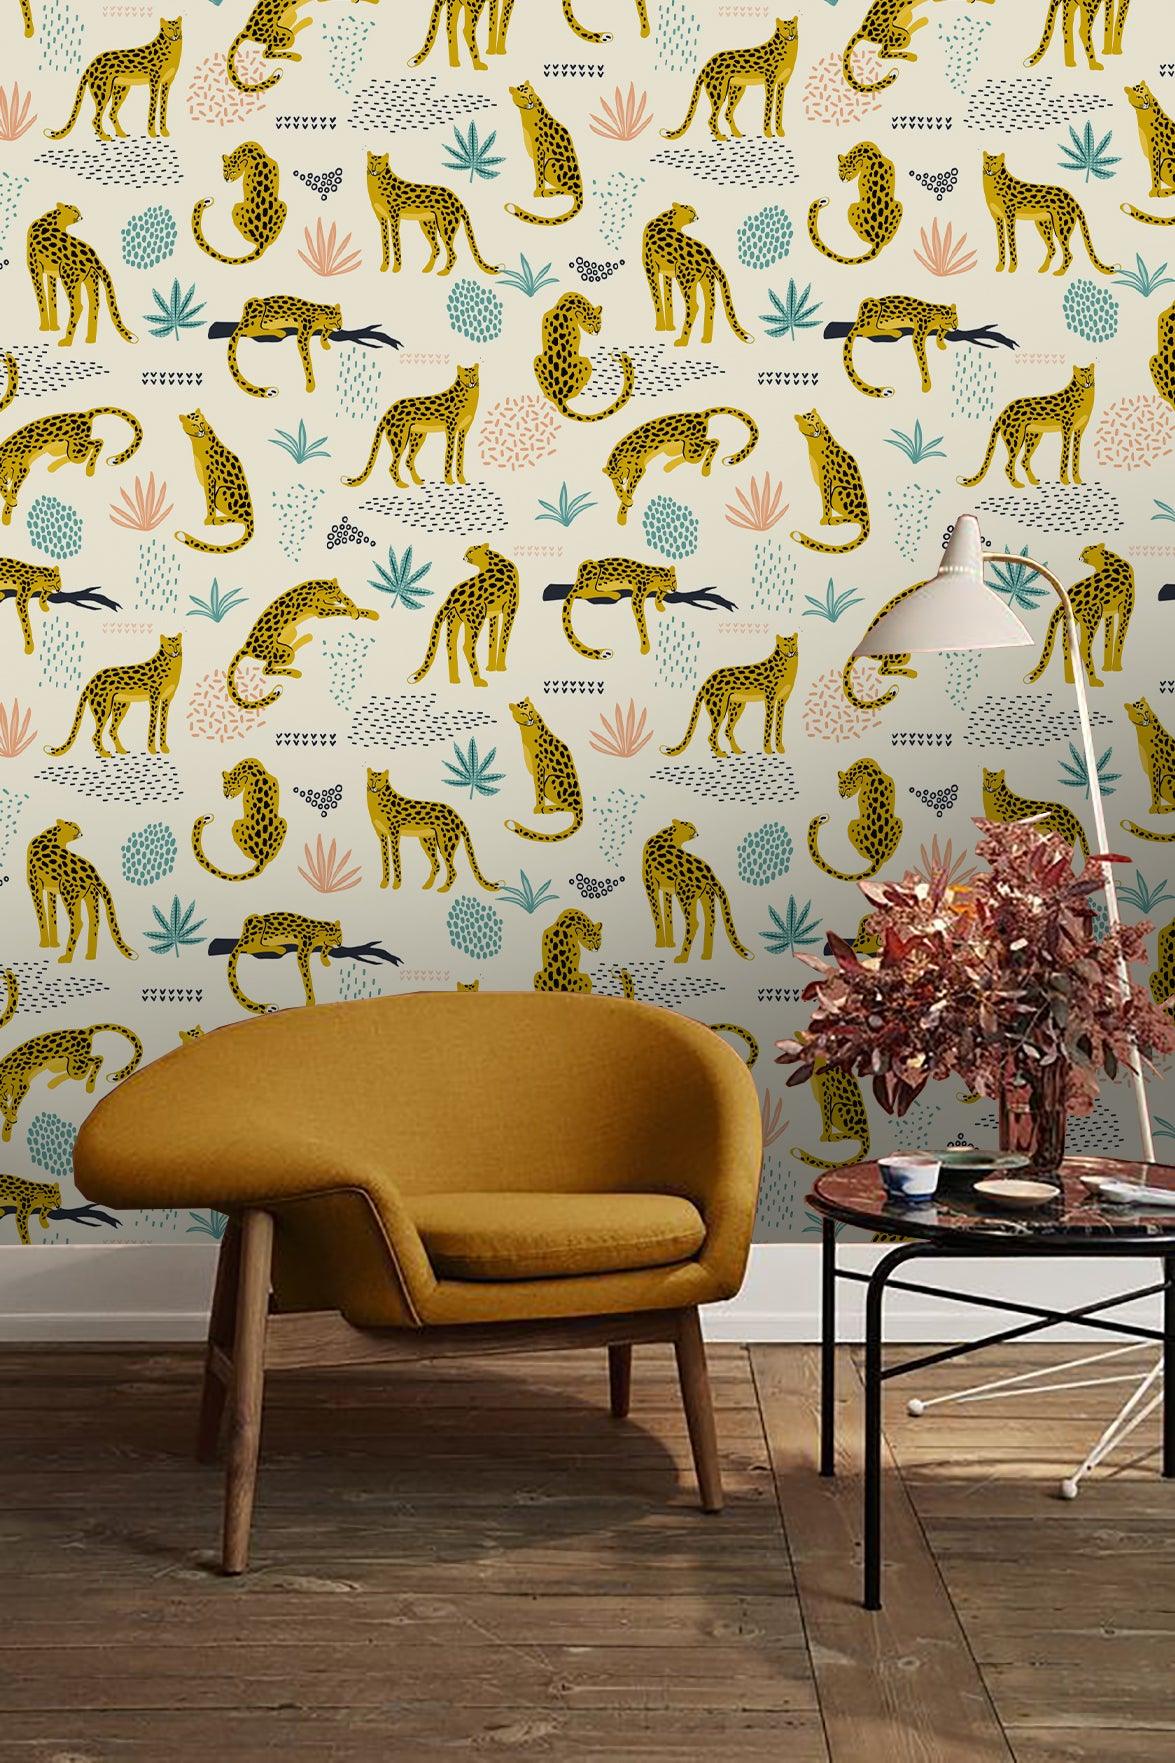 3D Yellow Leopard Wall Mural Wallpaper 55- Jess Art Decoration